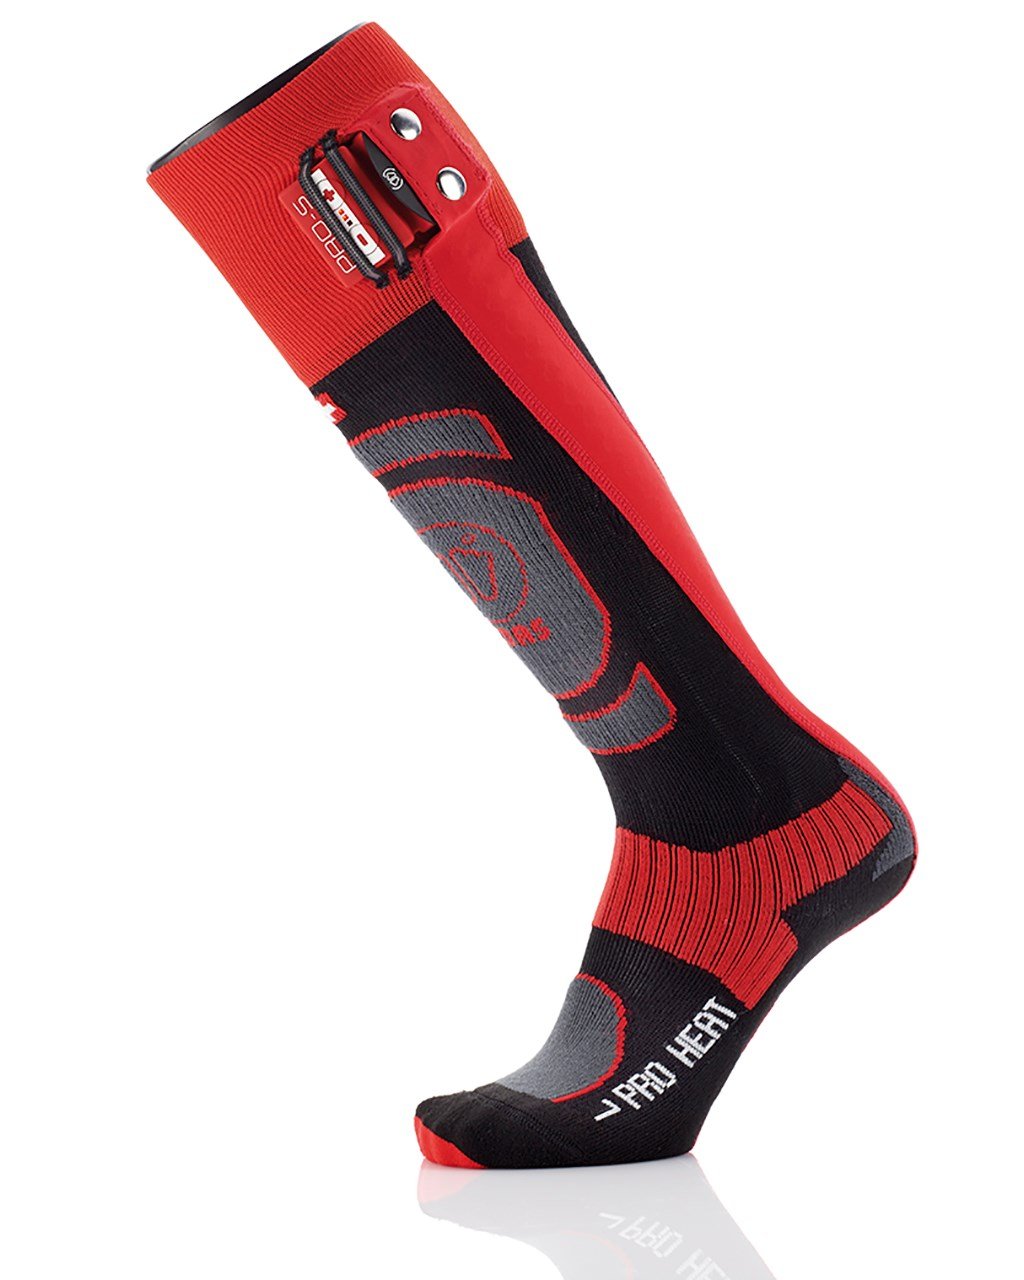 Vyhrievané ponožky Sidas Pro Heat Socks